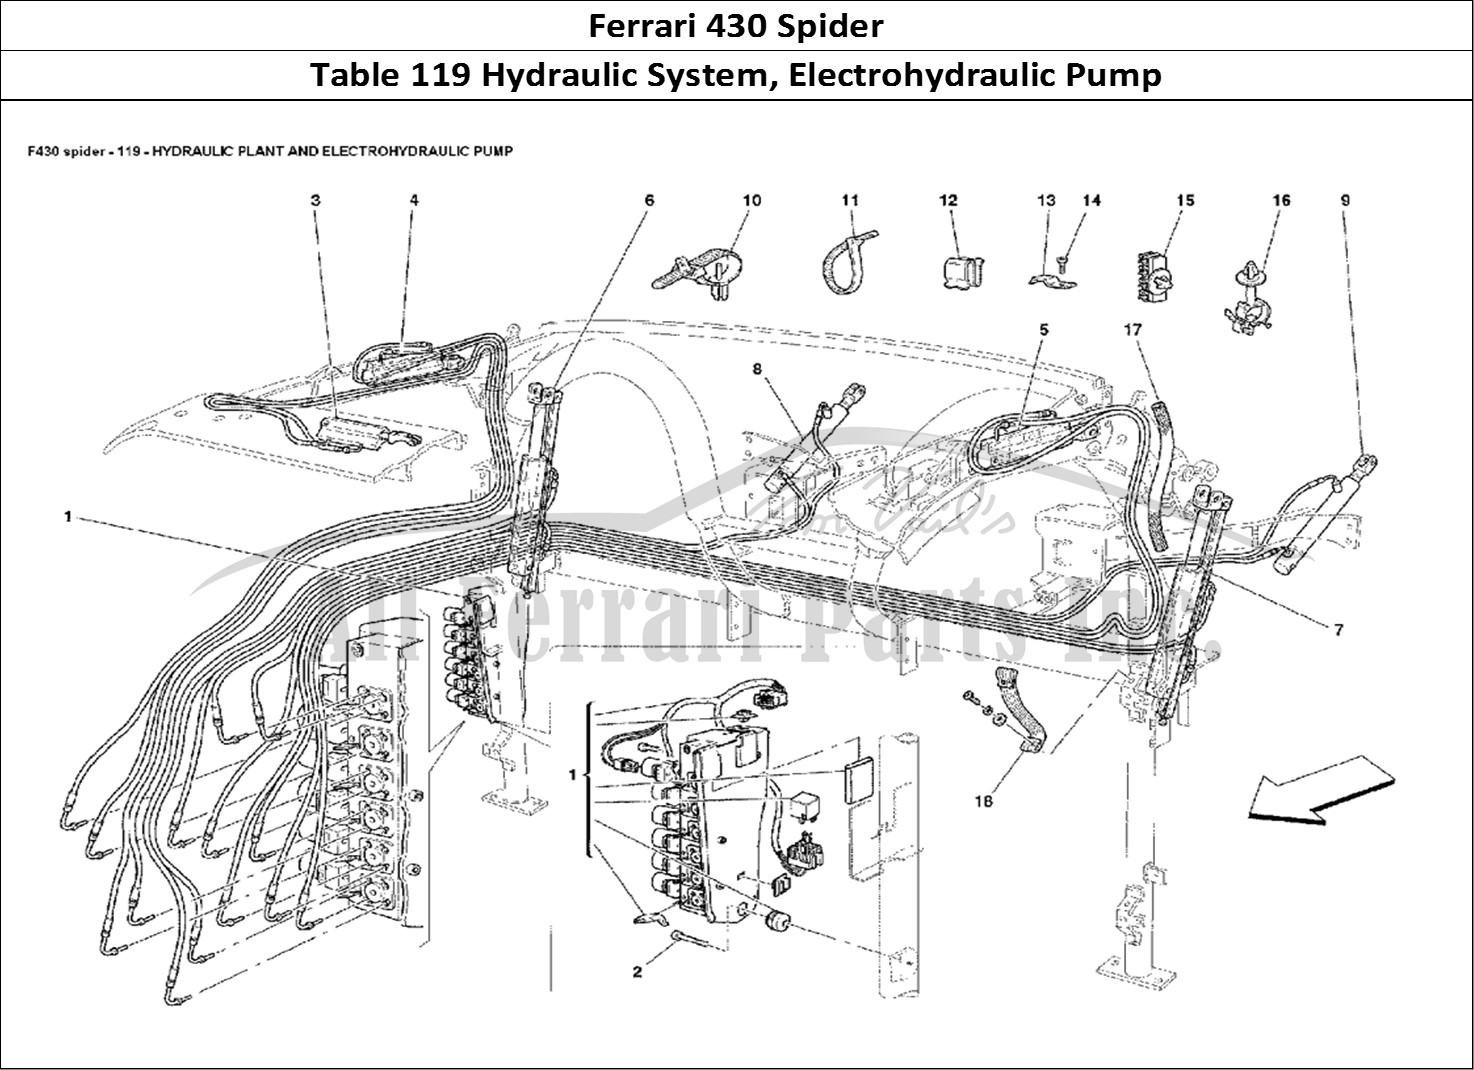 Ferrari Parts Ferrari 430 Spider Page 119 Hydraulic Plant and Elect